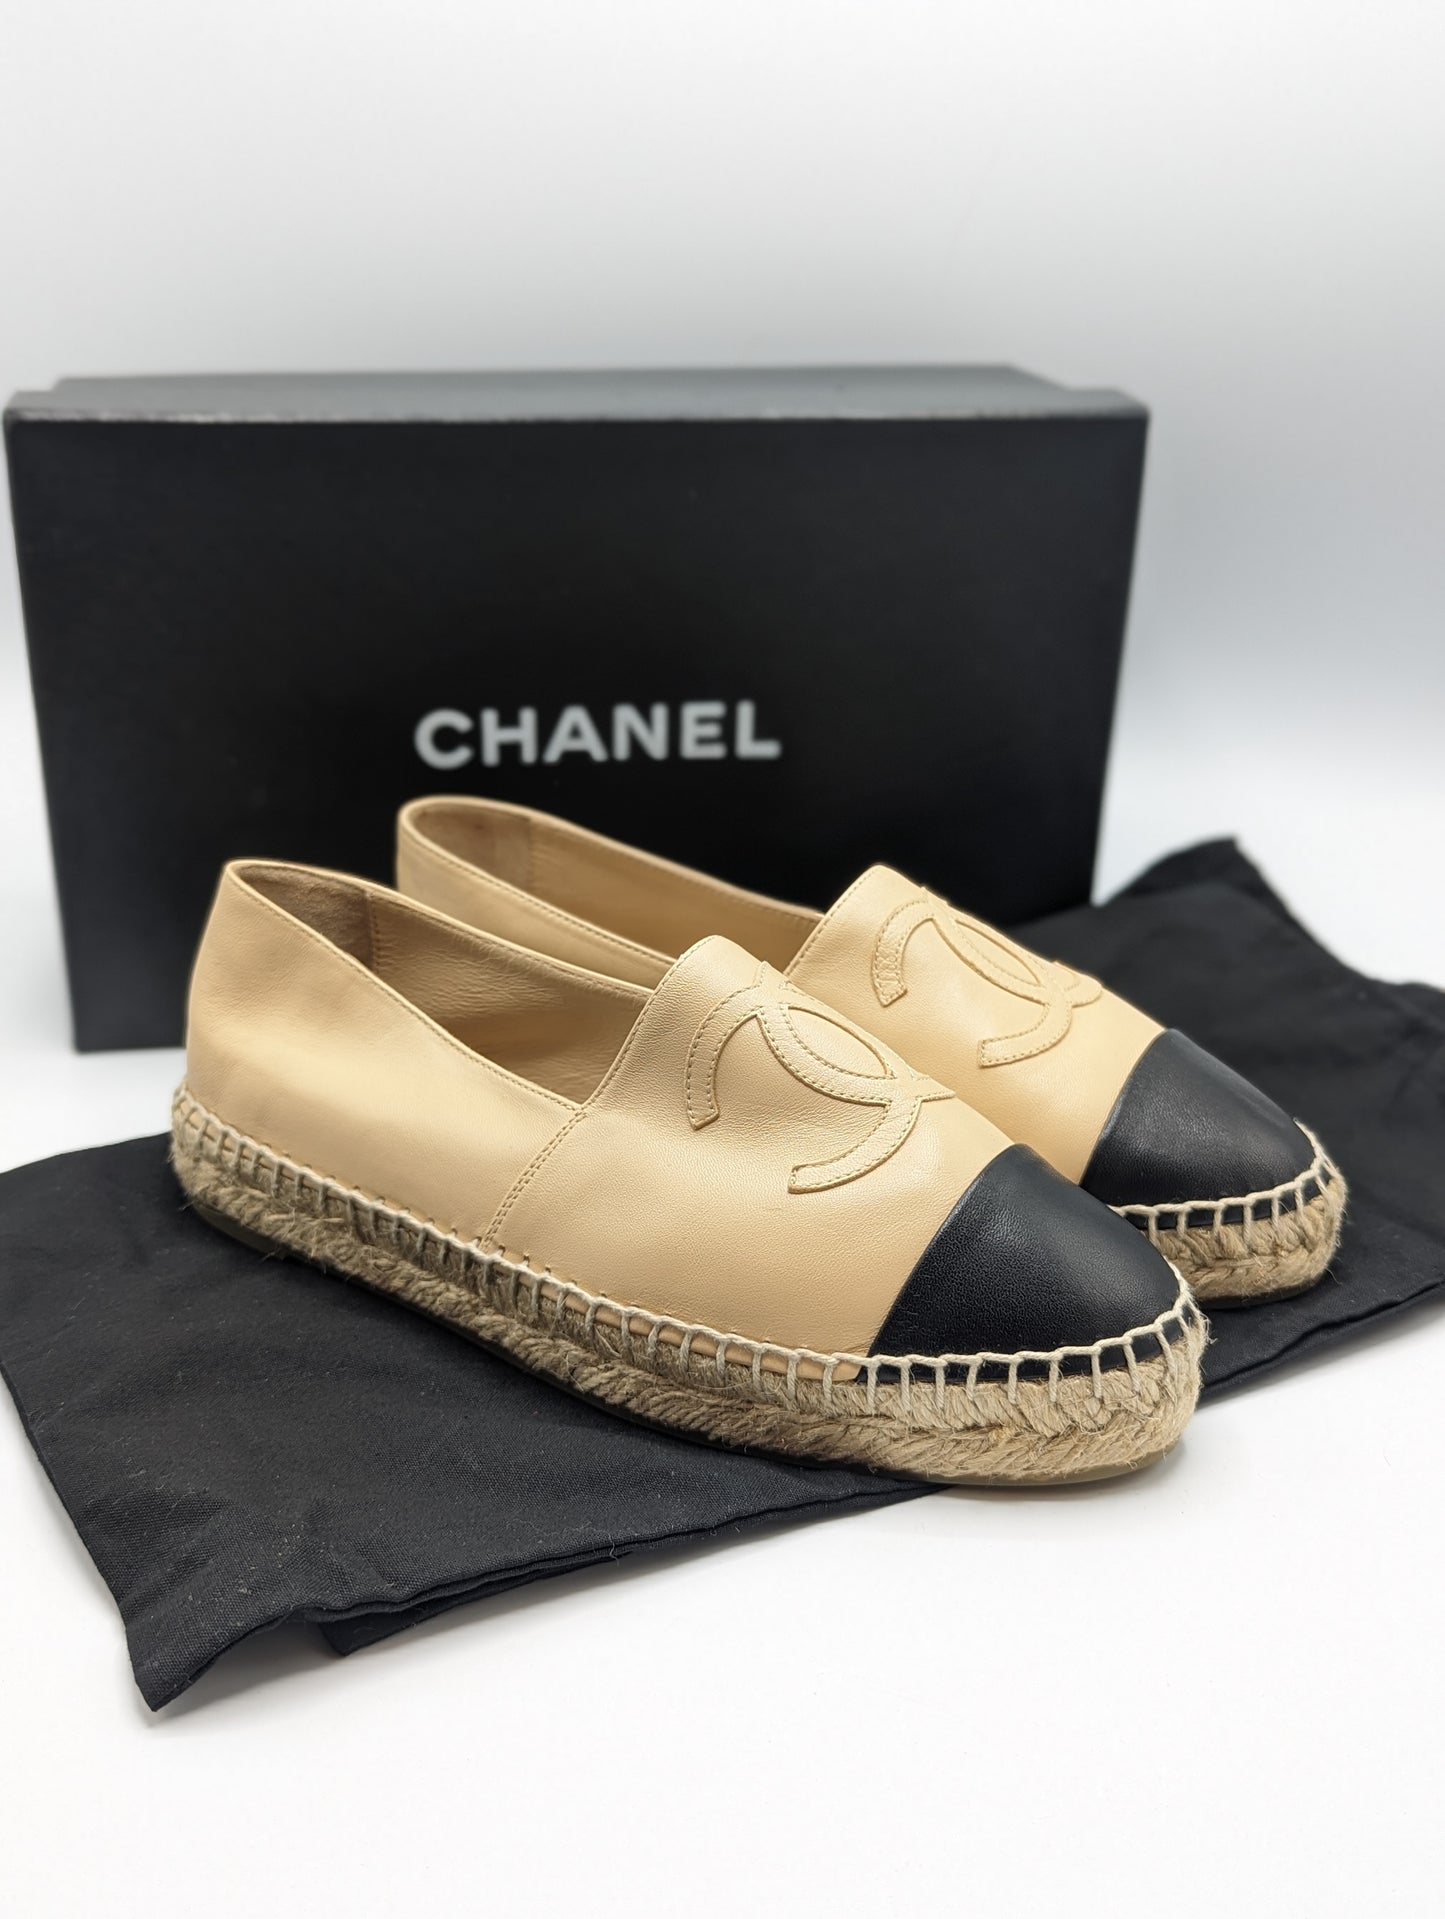 Chanel Beige Lambskin Espadrilles Size 37